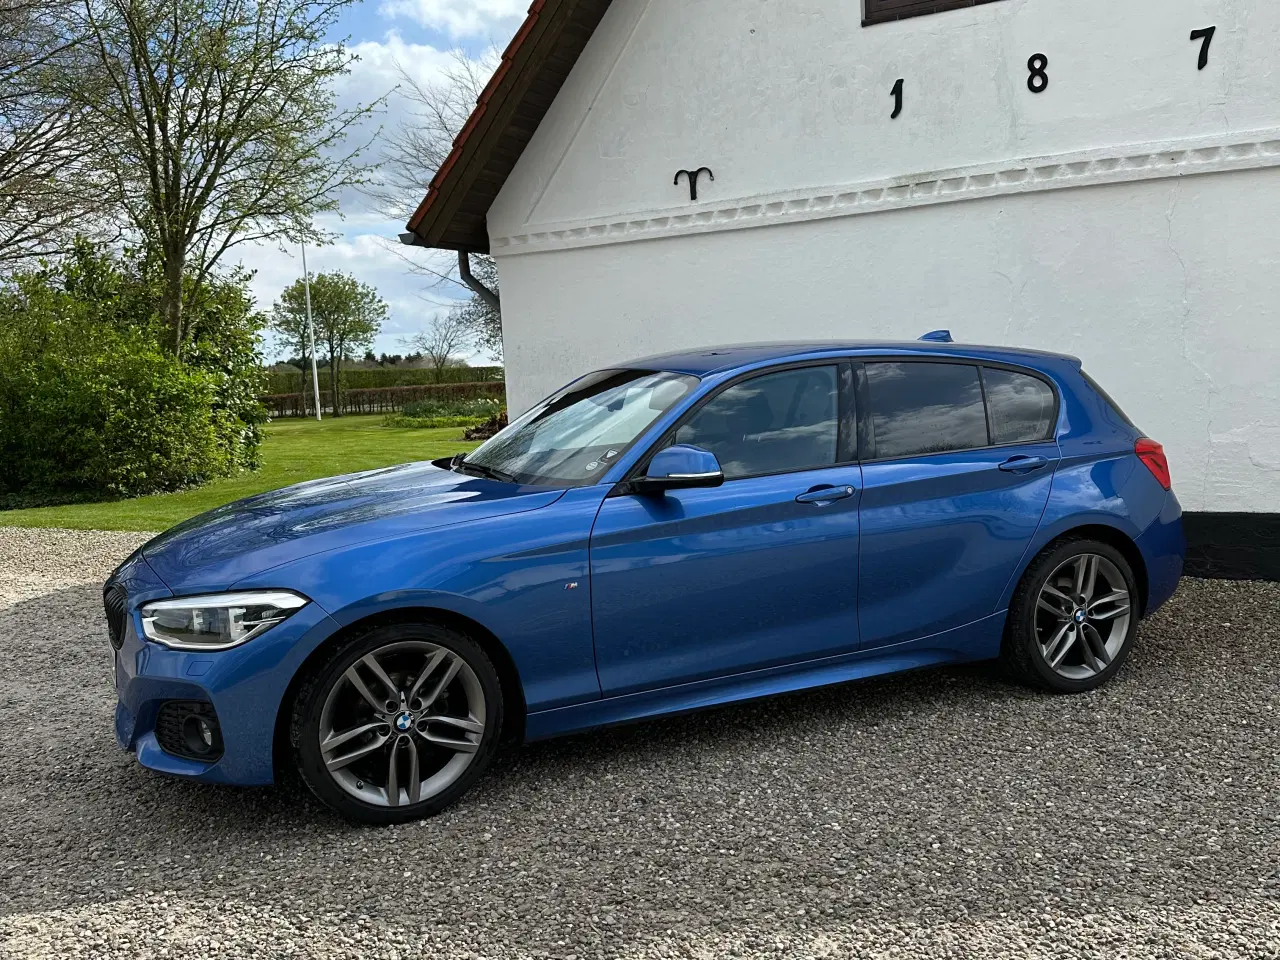 Billede 3 - 2019 BMW 118d 5-dørs hatchback streptonic